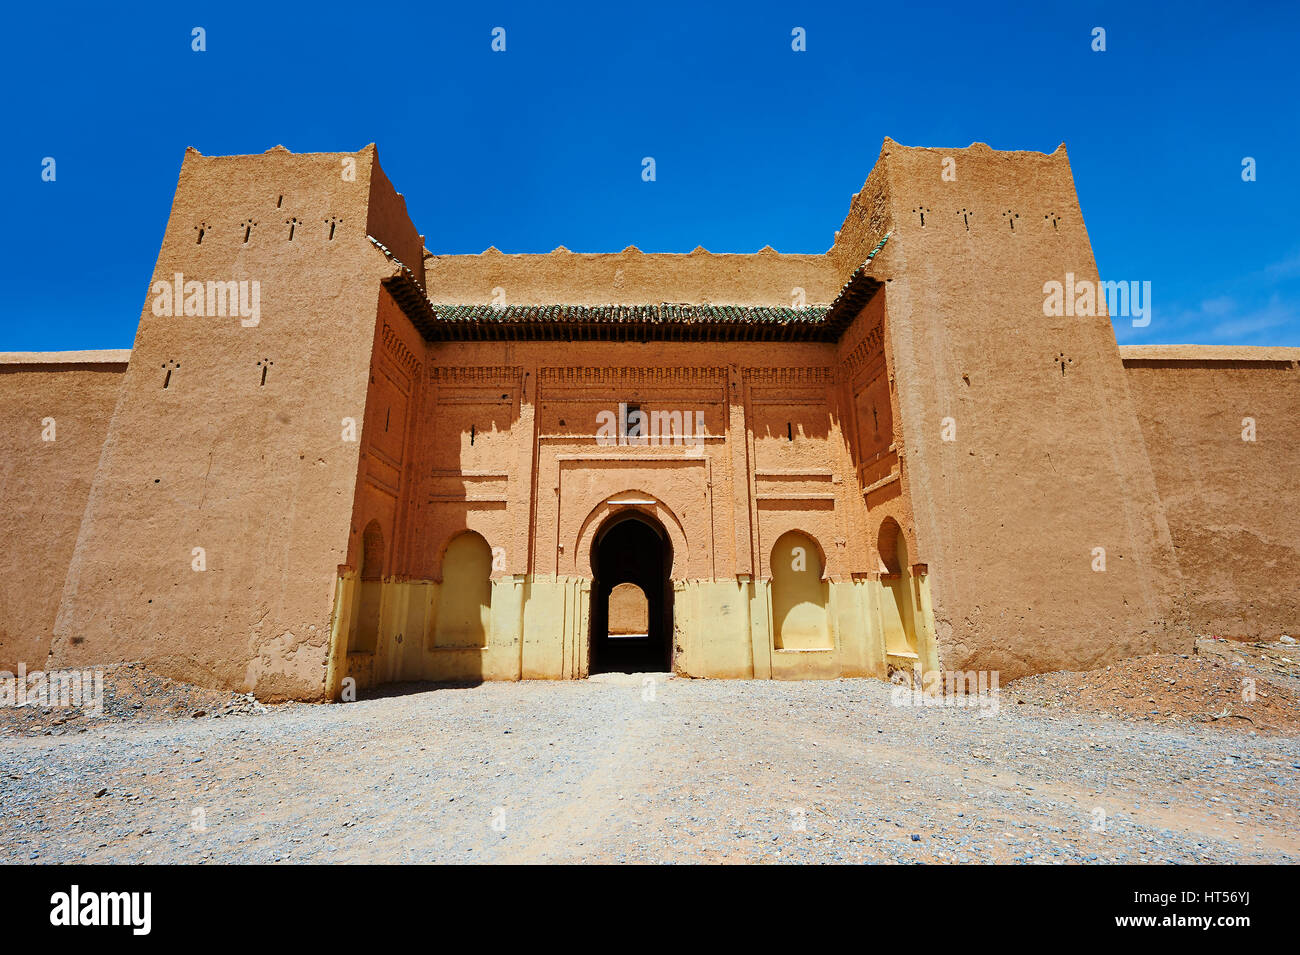 Ingresso e fortificazioni della Alaouite Ksar Fida costruito da Moulay Ismaïl secondo dominatore del marocchino dinastia Alaouite ( regnò 1672-1727 ). Foto Stock